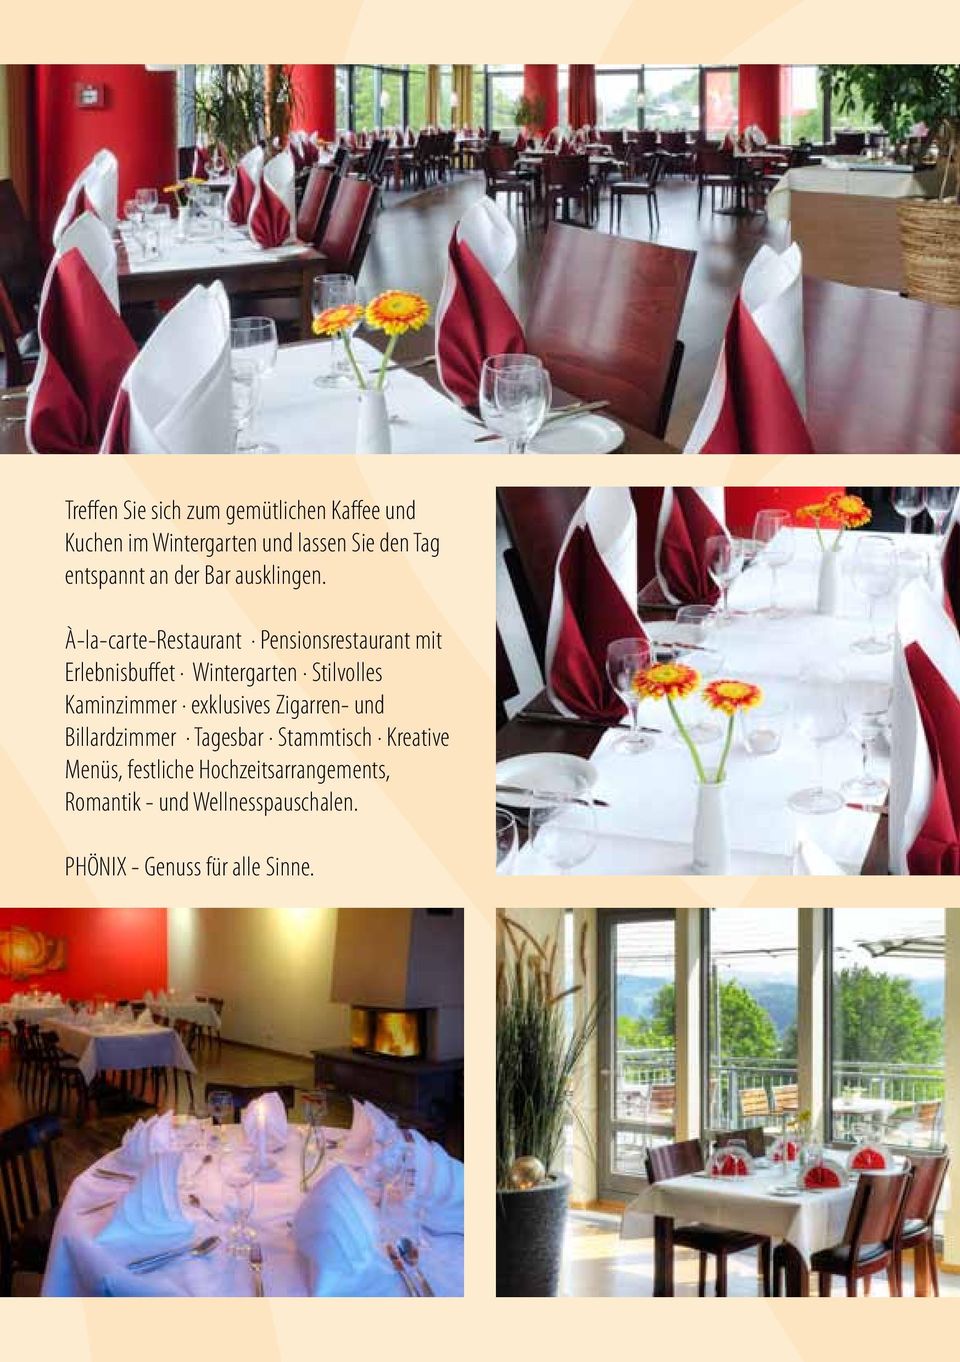 À-la-carte-Restaurant Pensionsrestaurant mit Erlebnisbuffet Wintergarten Stilvolles Kaminzimmer